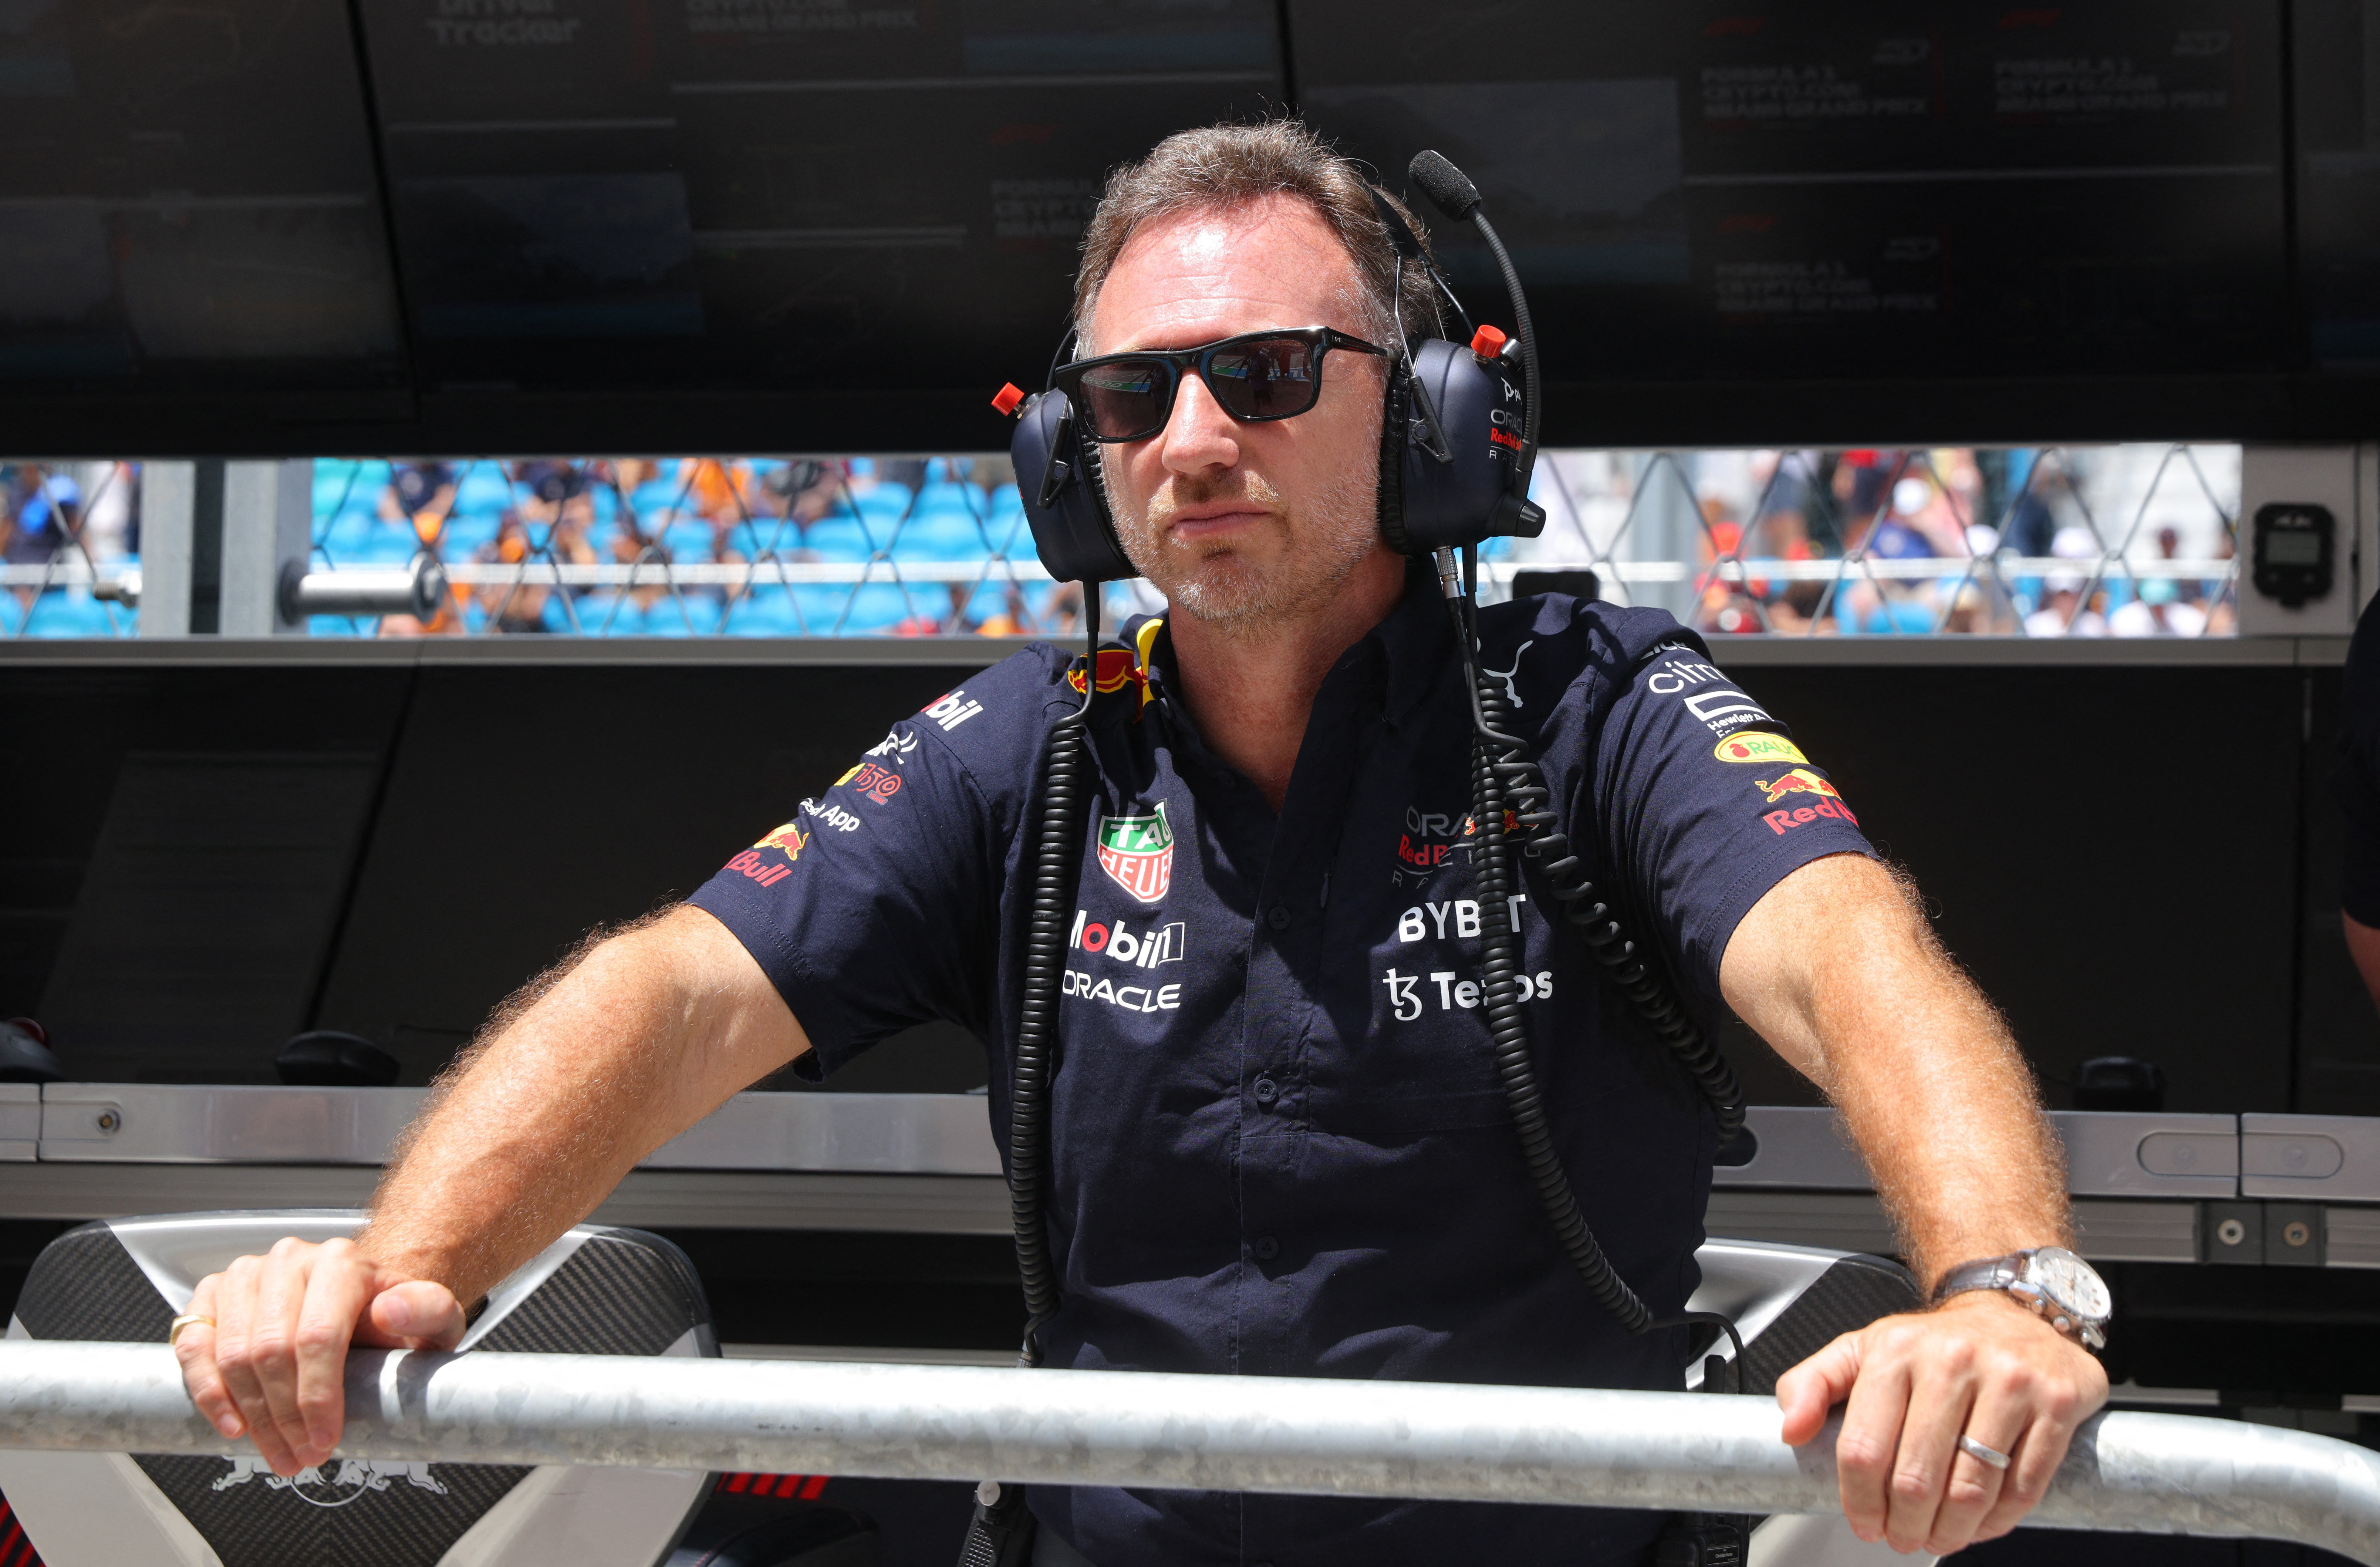 Christian Horner aseguró que en Red Bull Racing están concentrados por el campeonato de constructores (Foto: REUTERS/Brian Snyder)